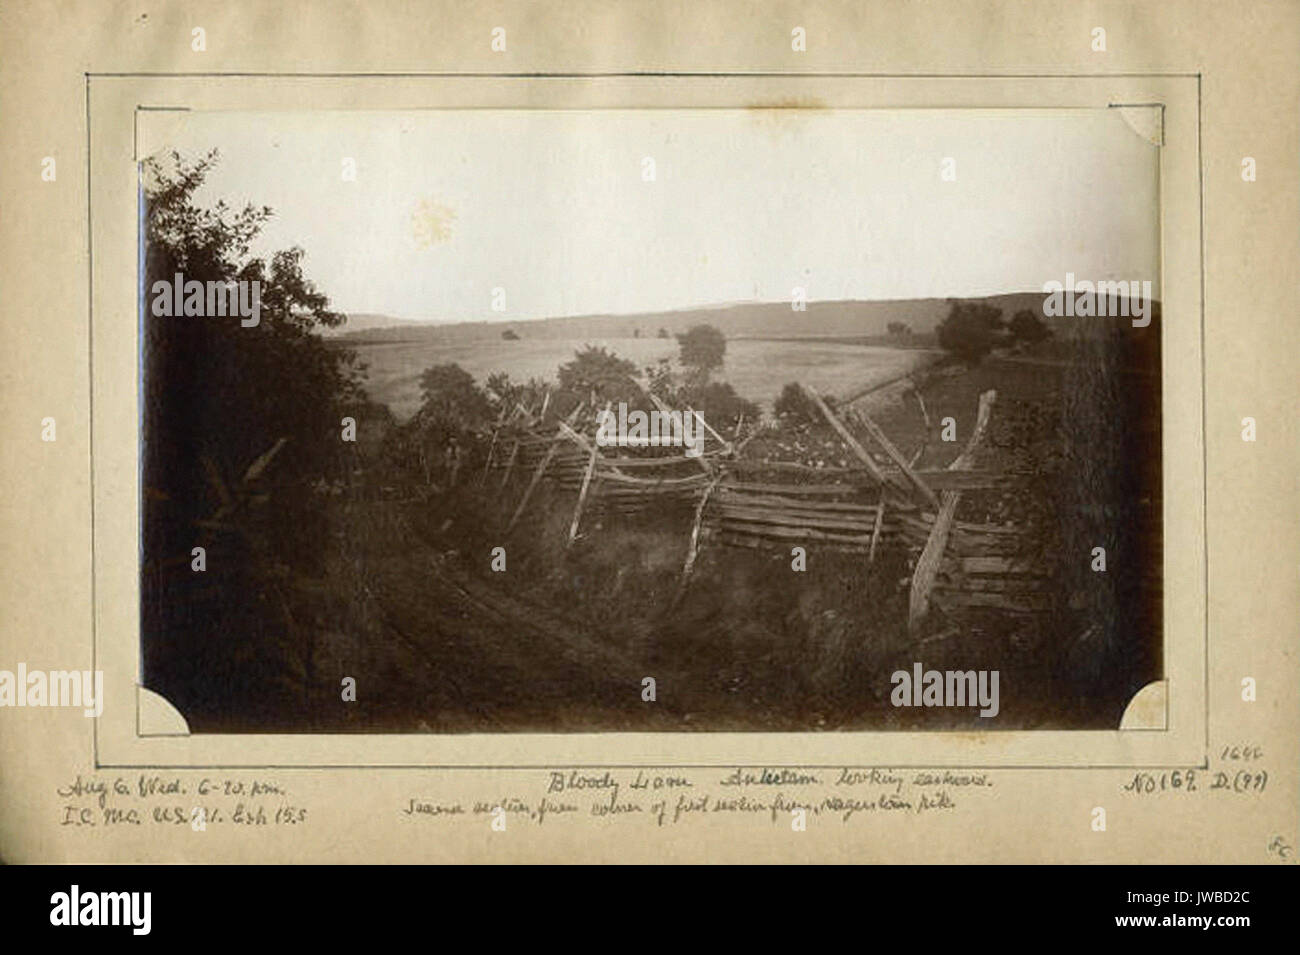 Bloody Lane Antietam ostwärts auf der Suche. Zweiter Abschnitt: von der Ecke der erste Abschnitt von Hagerstown Hecht. - Bürgerkrieg Fotos Stockfoto